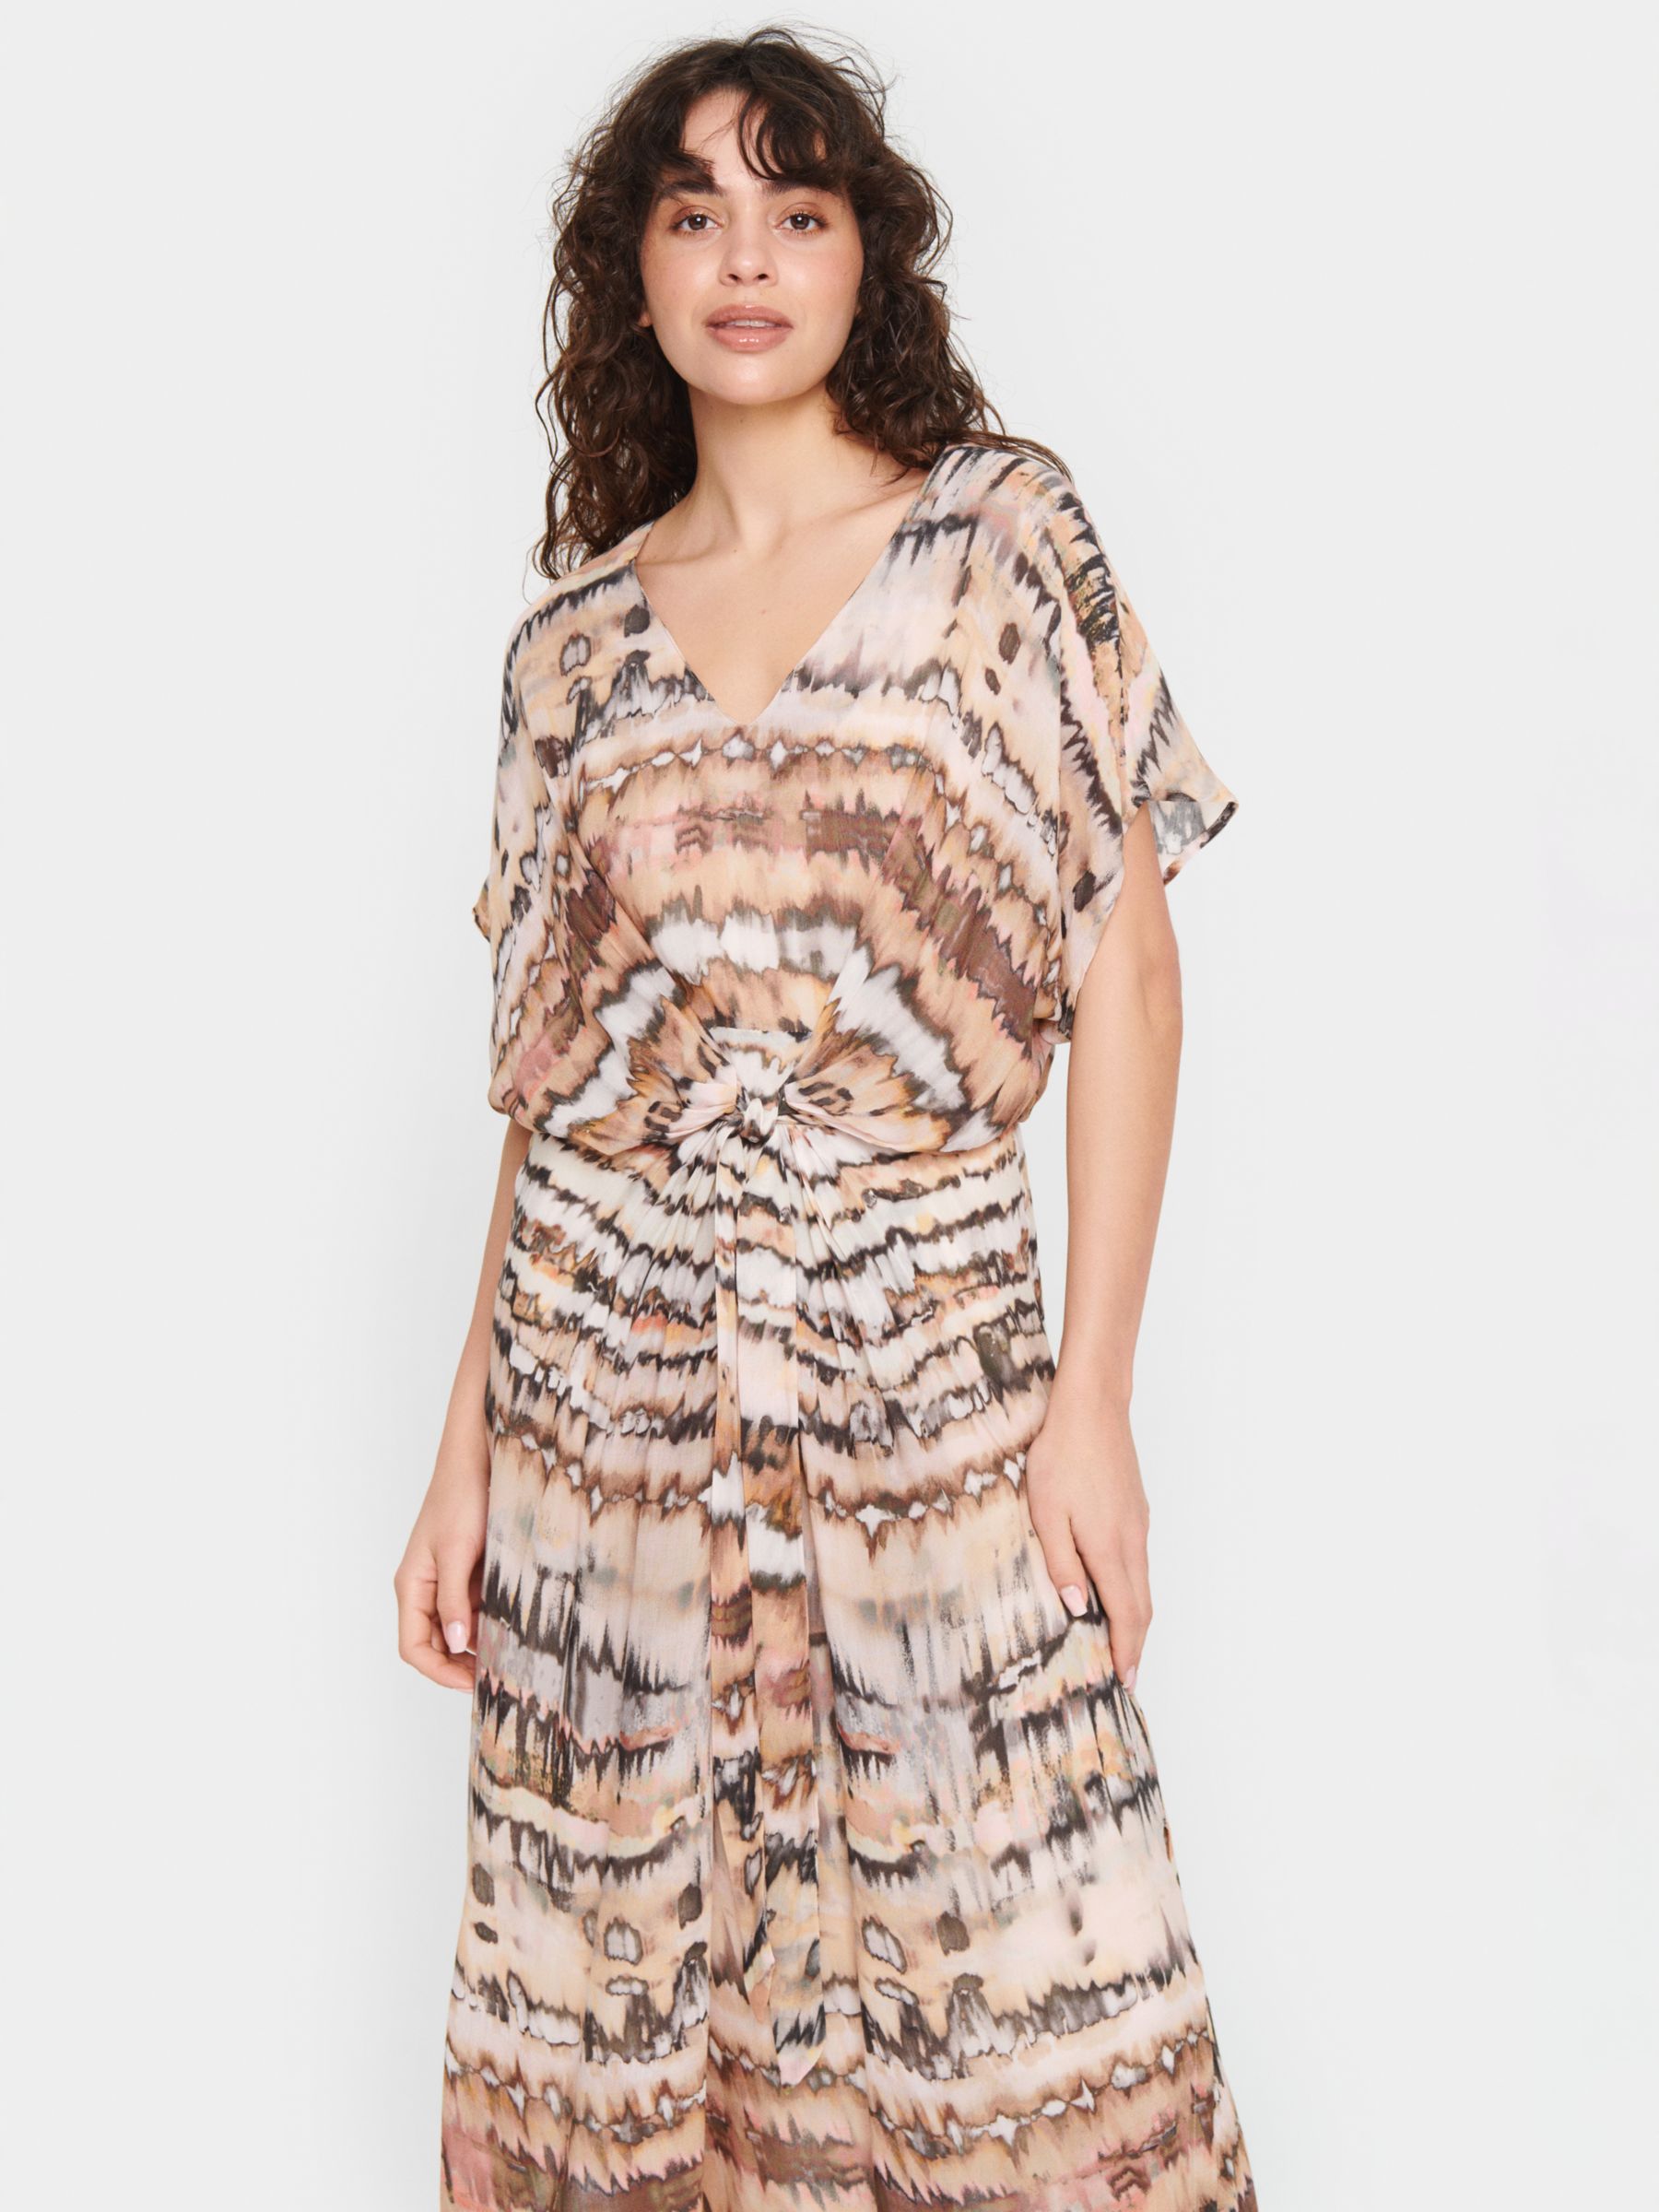 Saint Tropez Eya Tie Dye Strokes Print Maxi Dress, Creme/Multi, XS